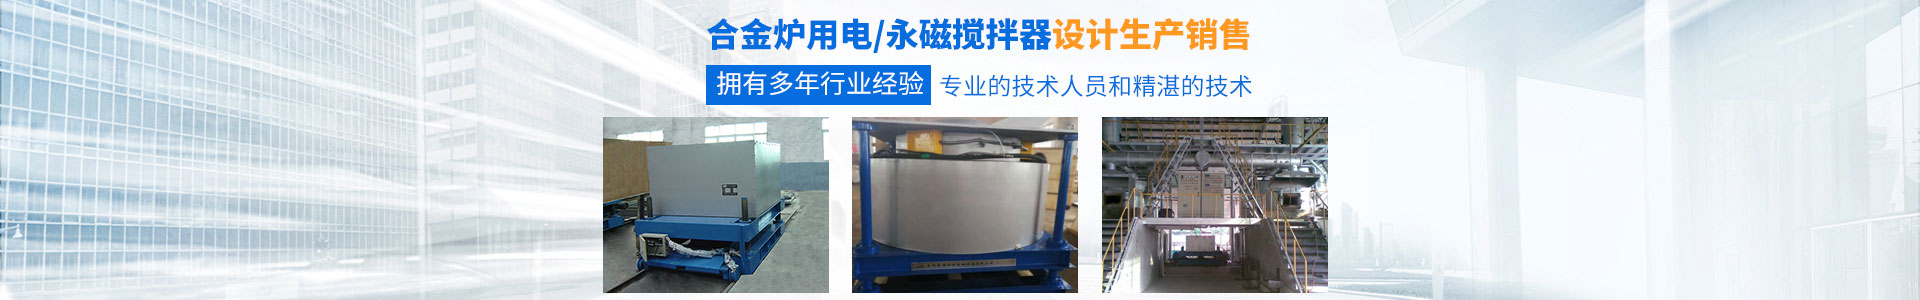 岳阳通海炉窑电磁设备有限公司_湖南熔炼炉生产销售|湖南电磁搅拌器生产销售